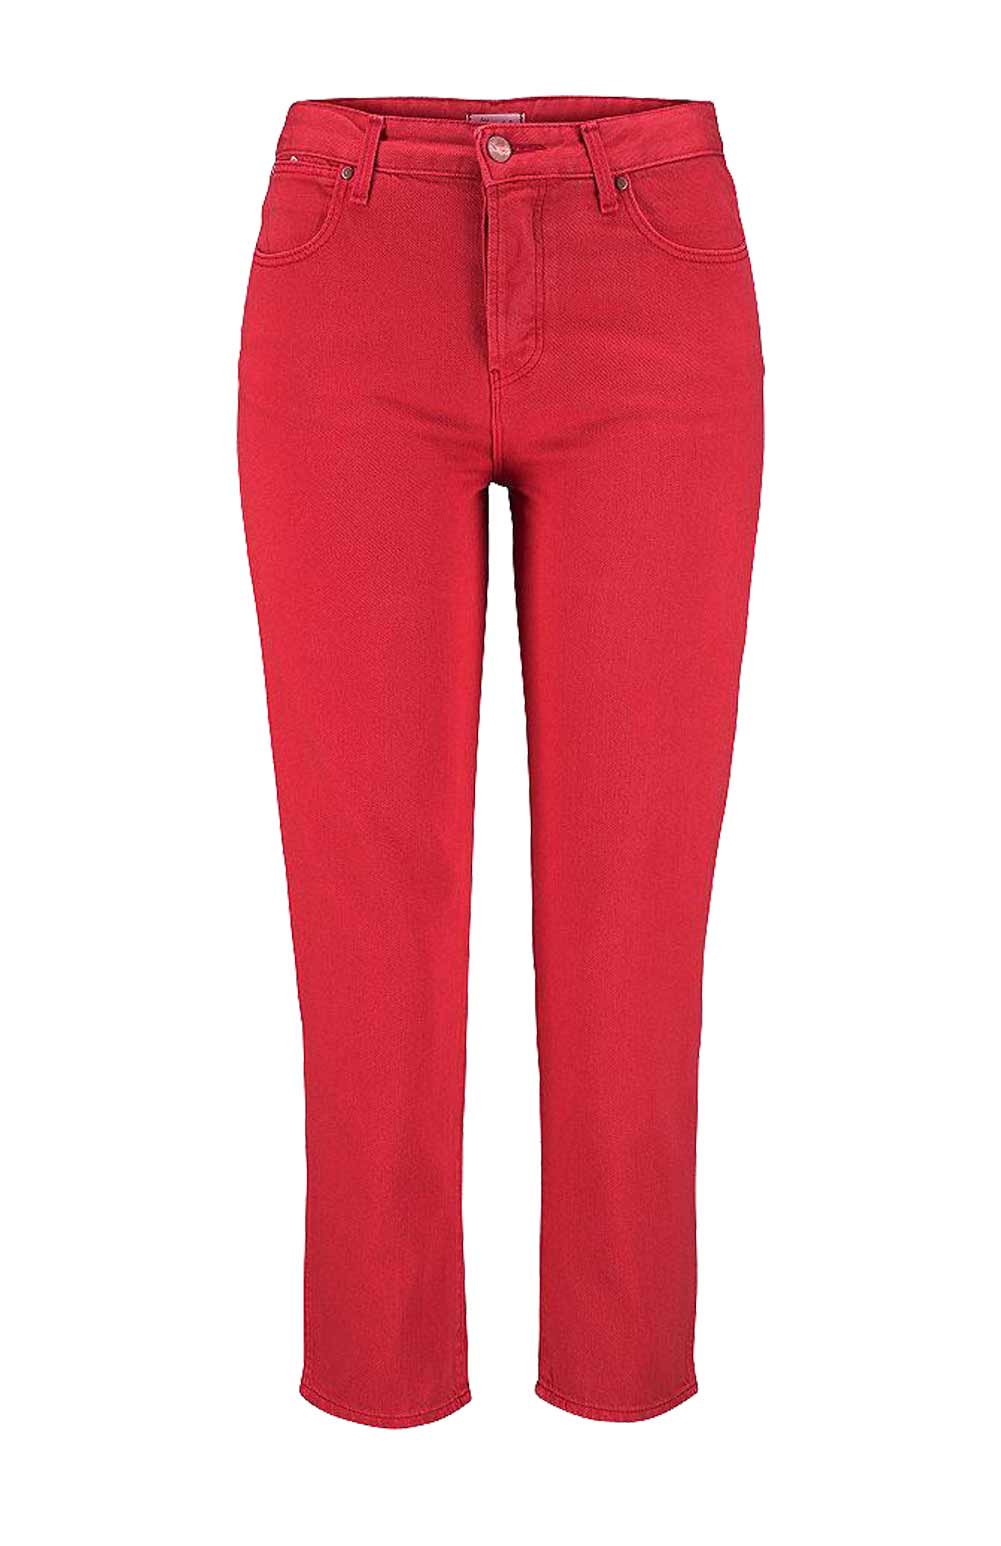 Wrangler Damen Marken-7/8-Jeans, rot